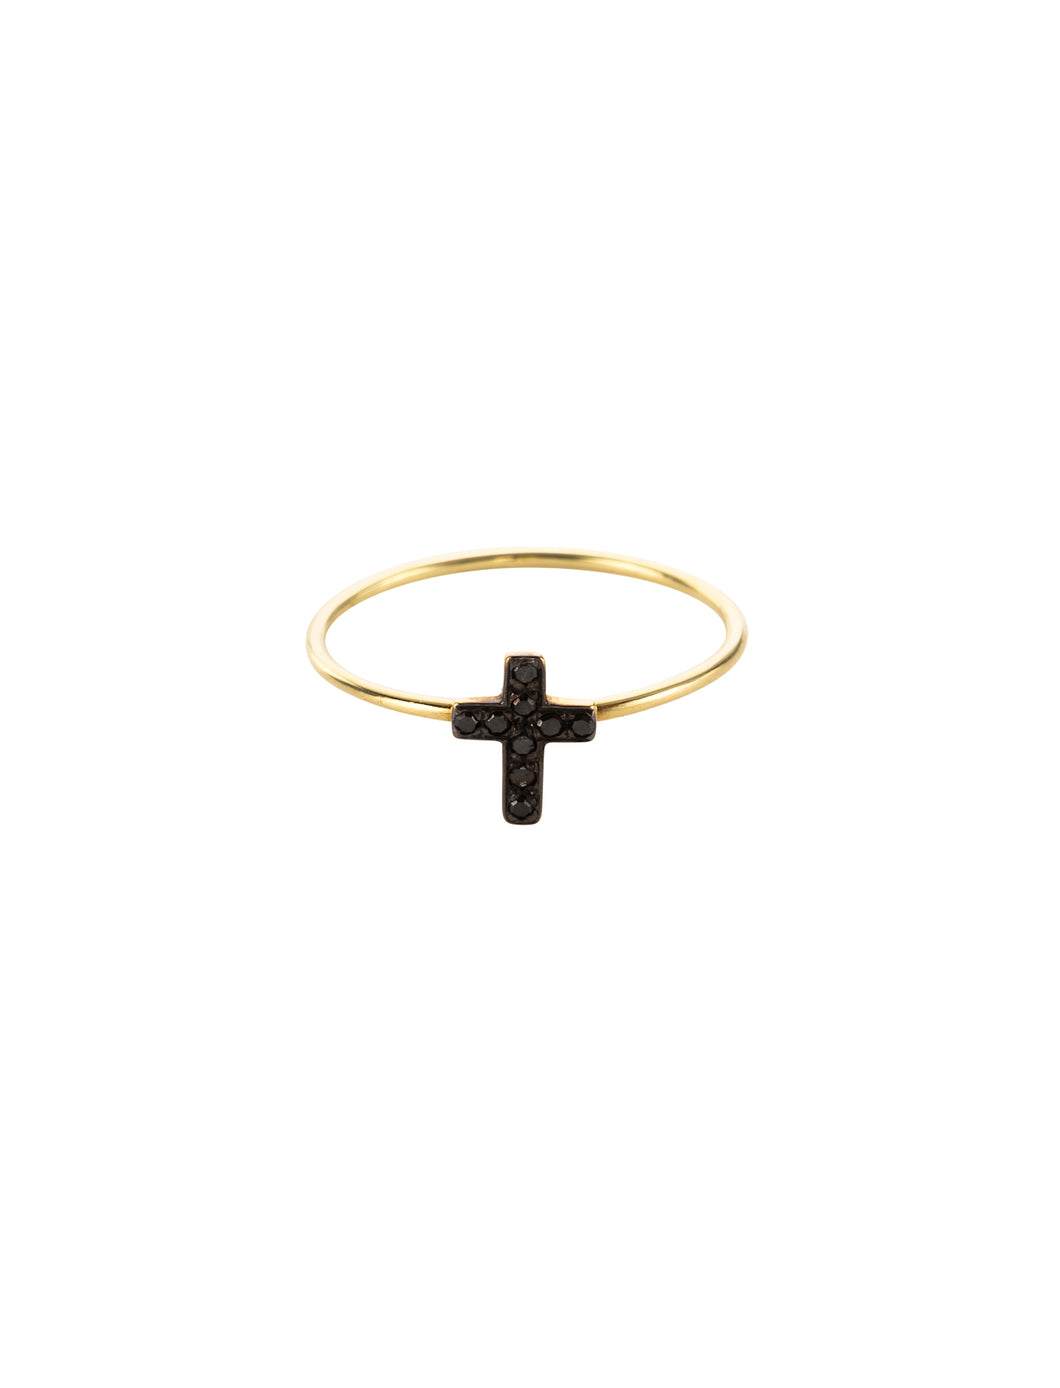 Cross | Kacey K Jewelry.